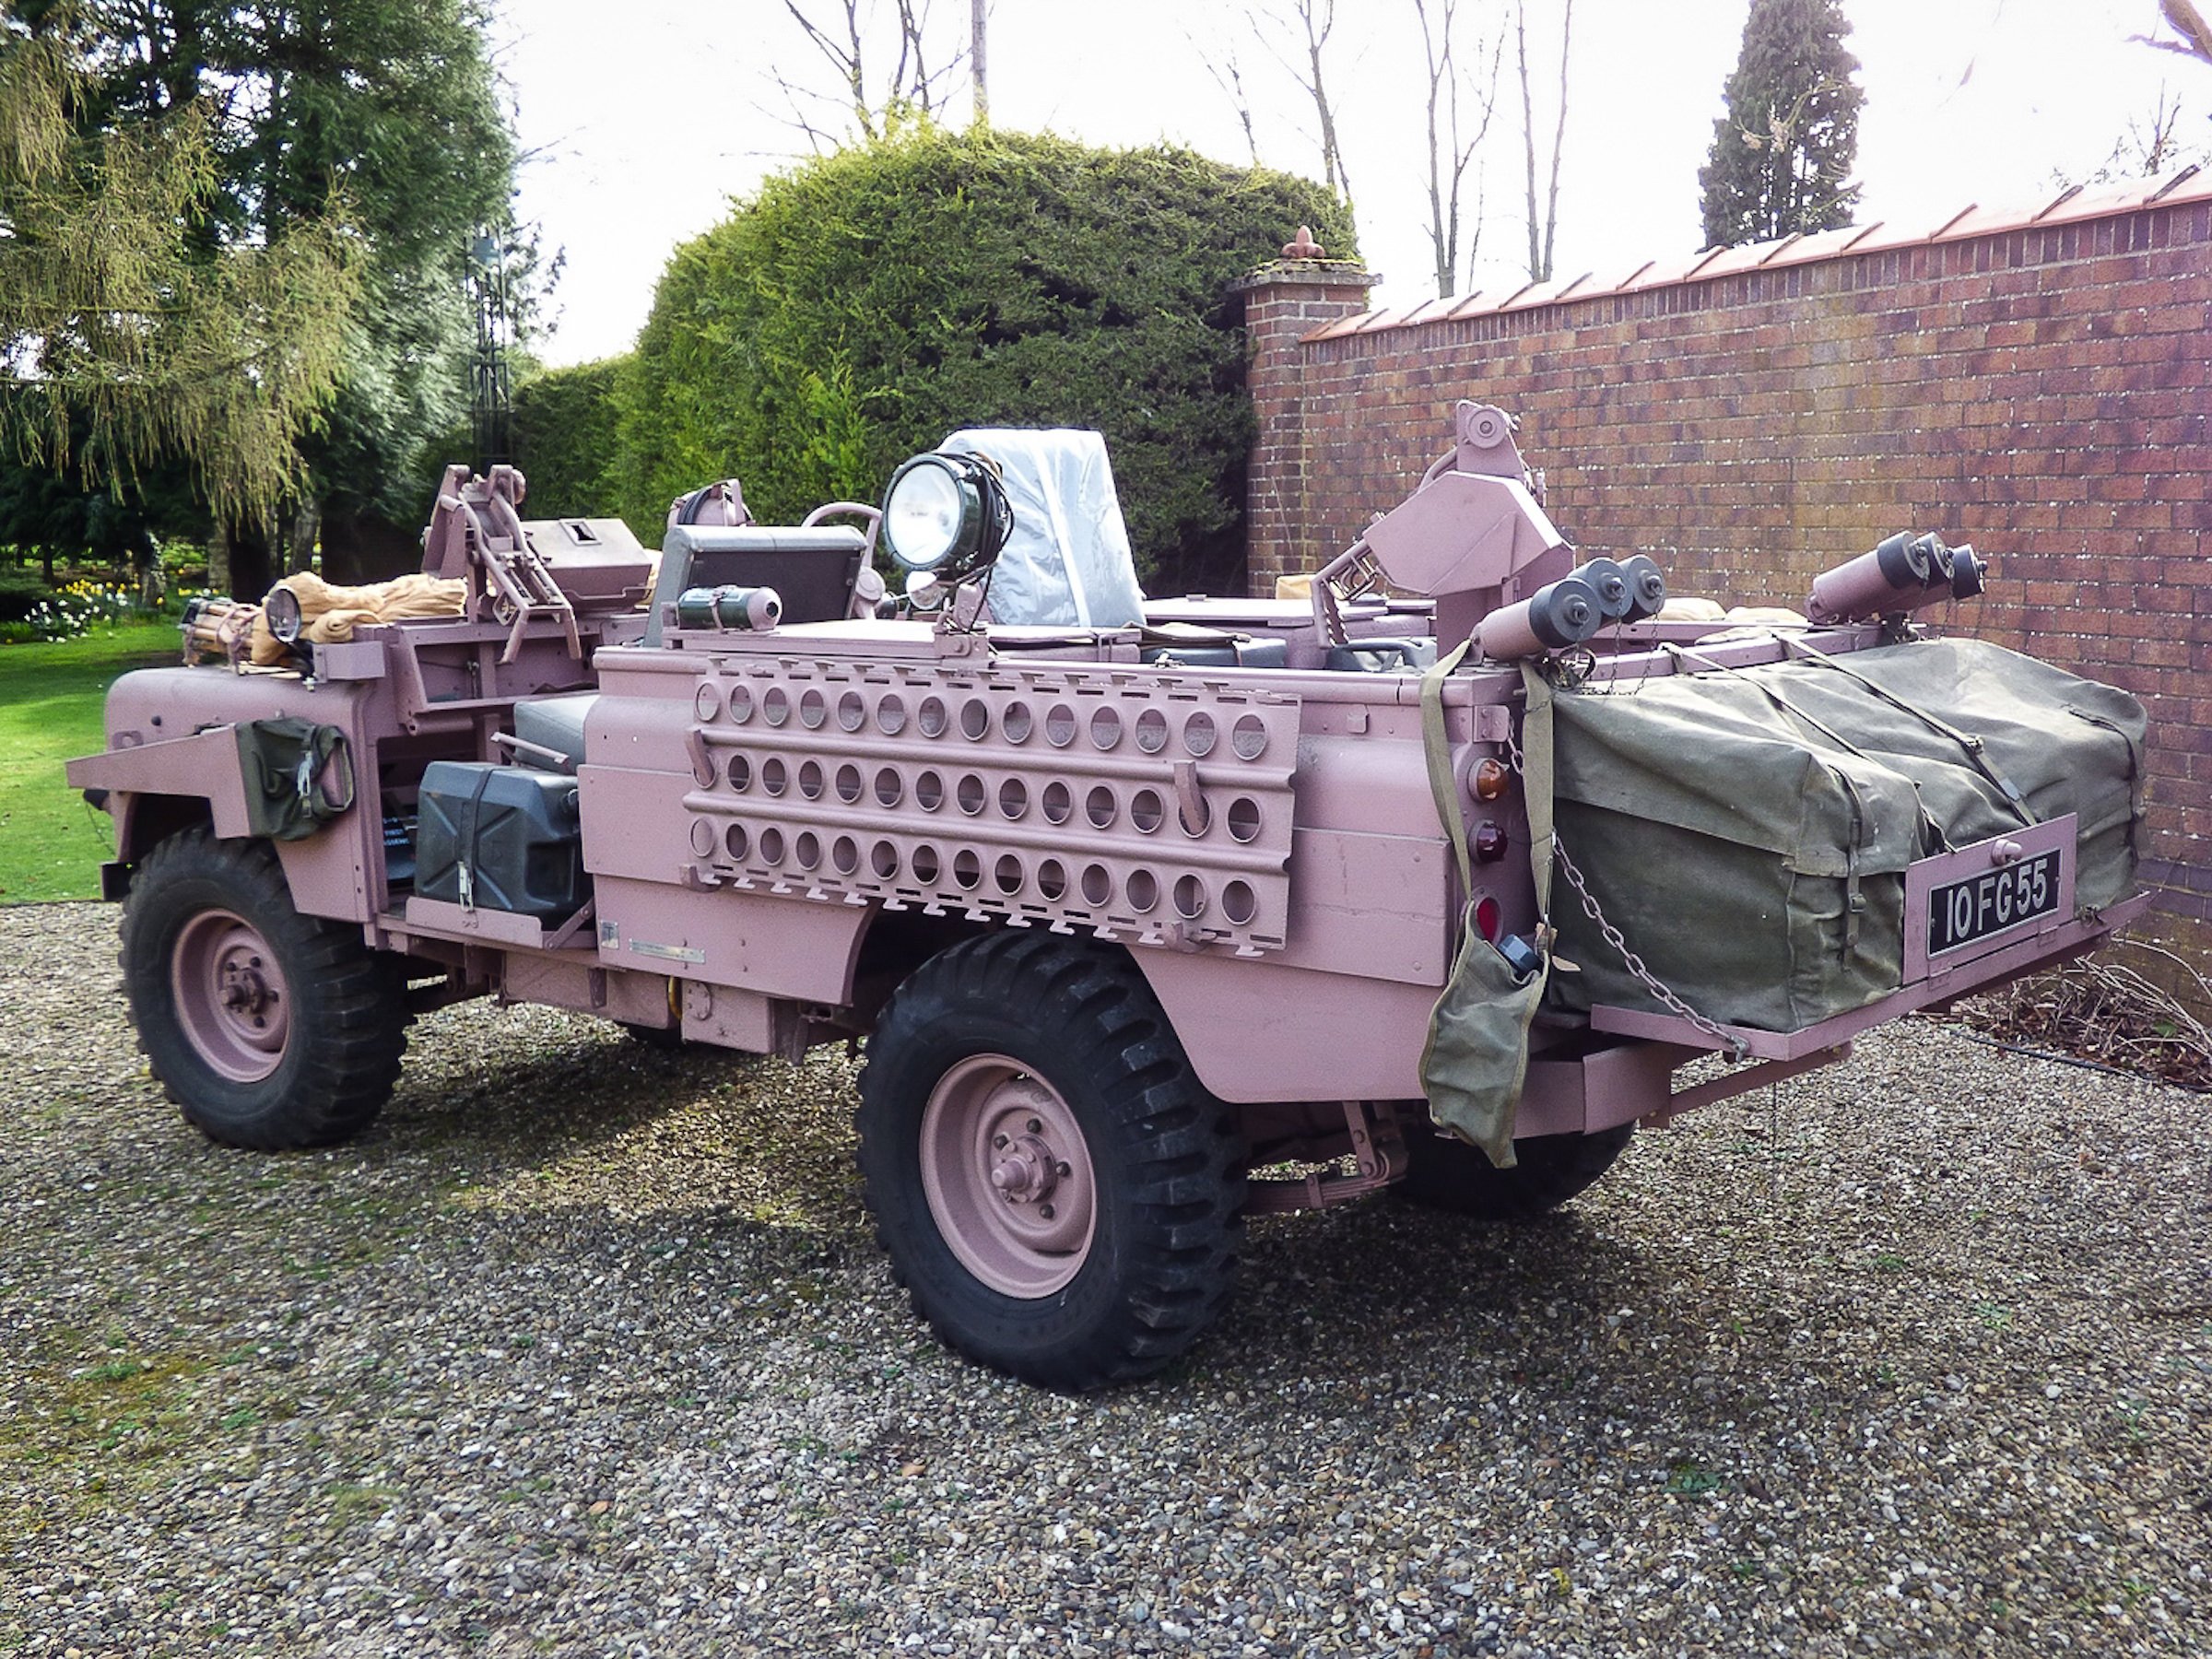 An Original Sas Land Rover Series 2A 109 Pink Panther - The "Pinkie"